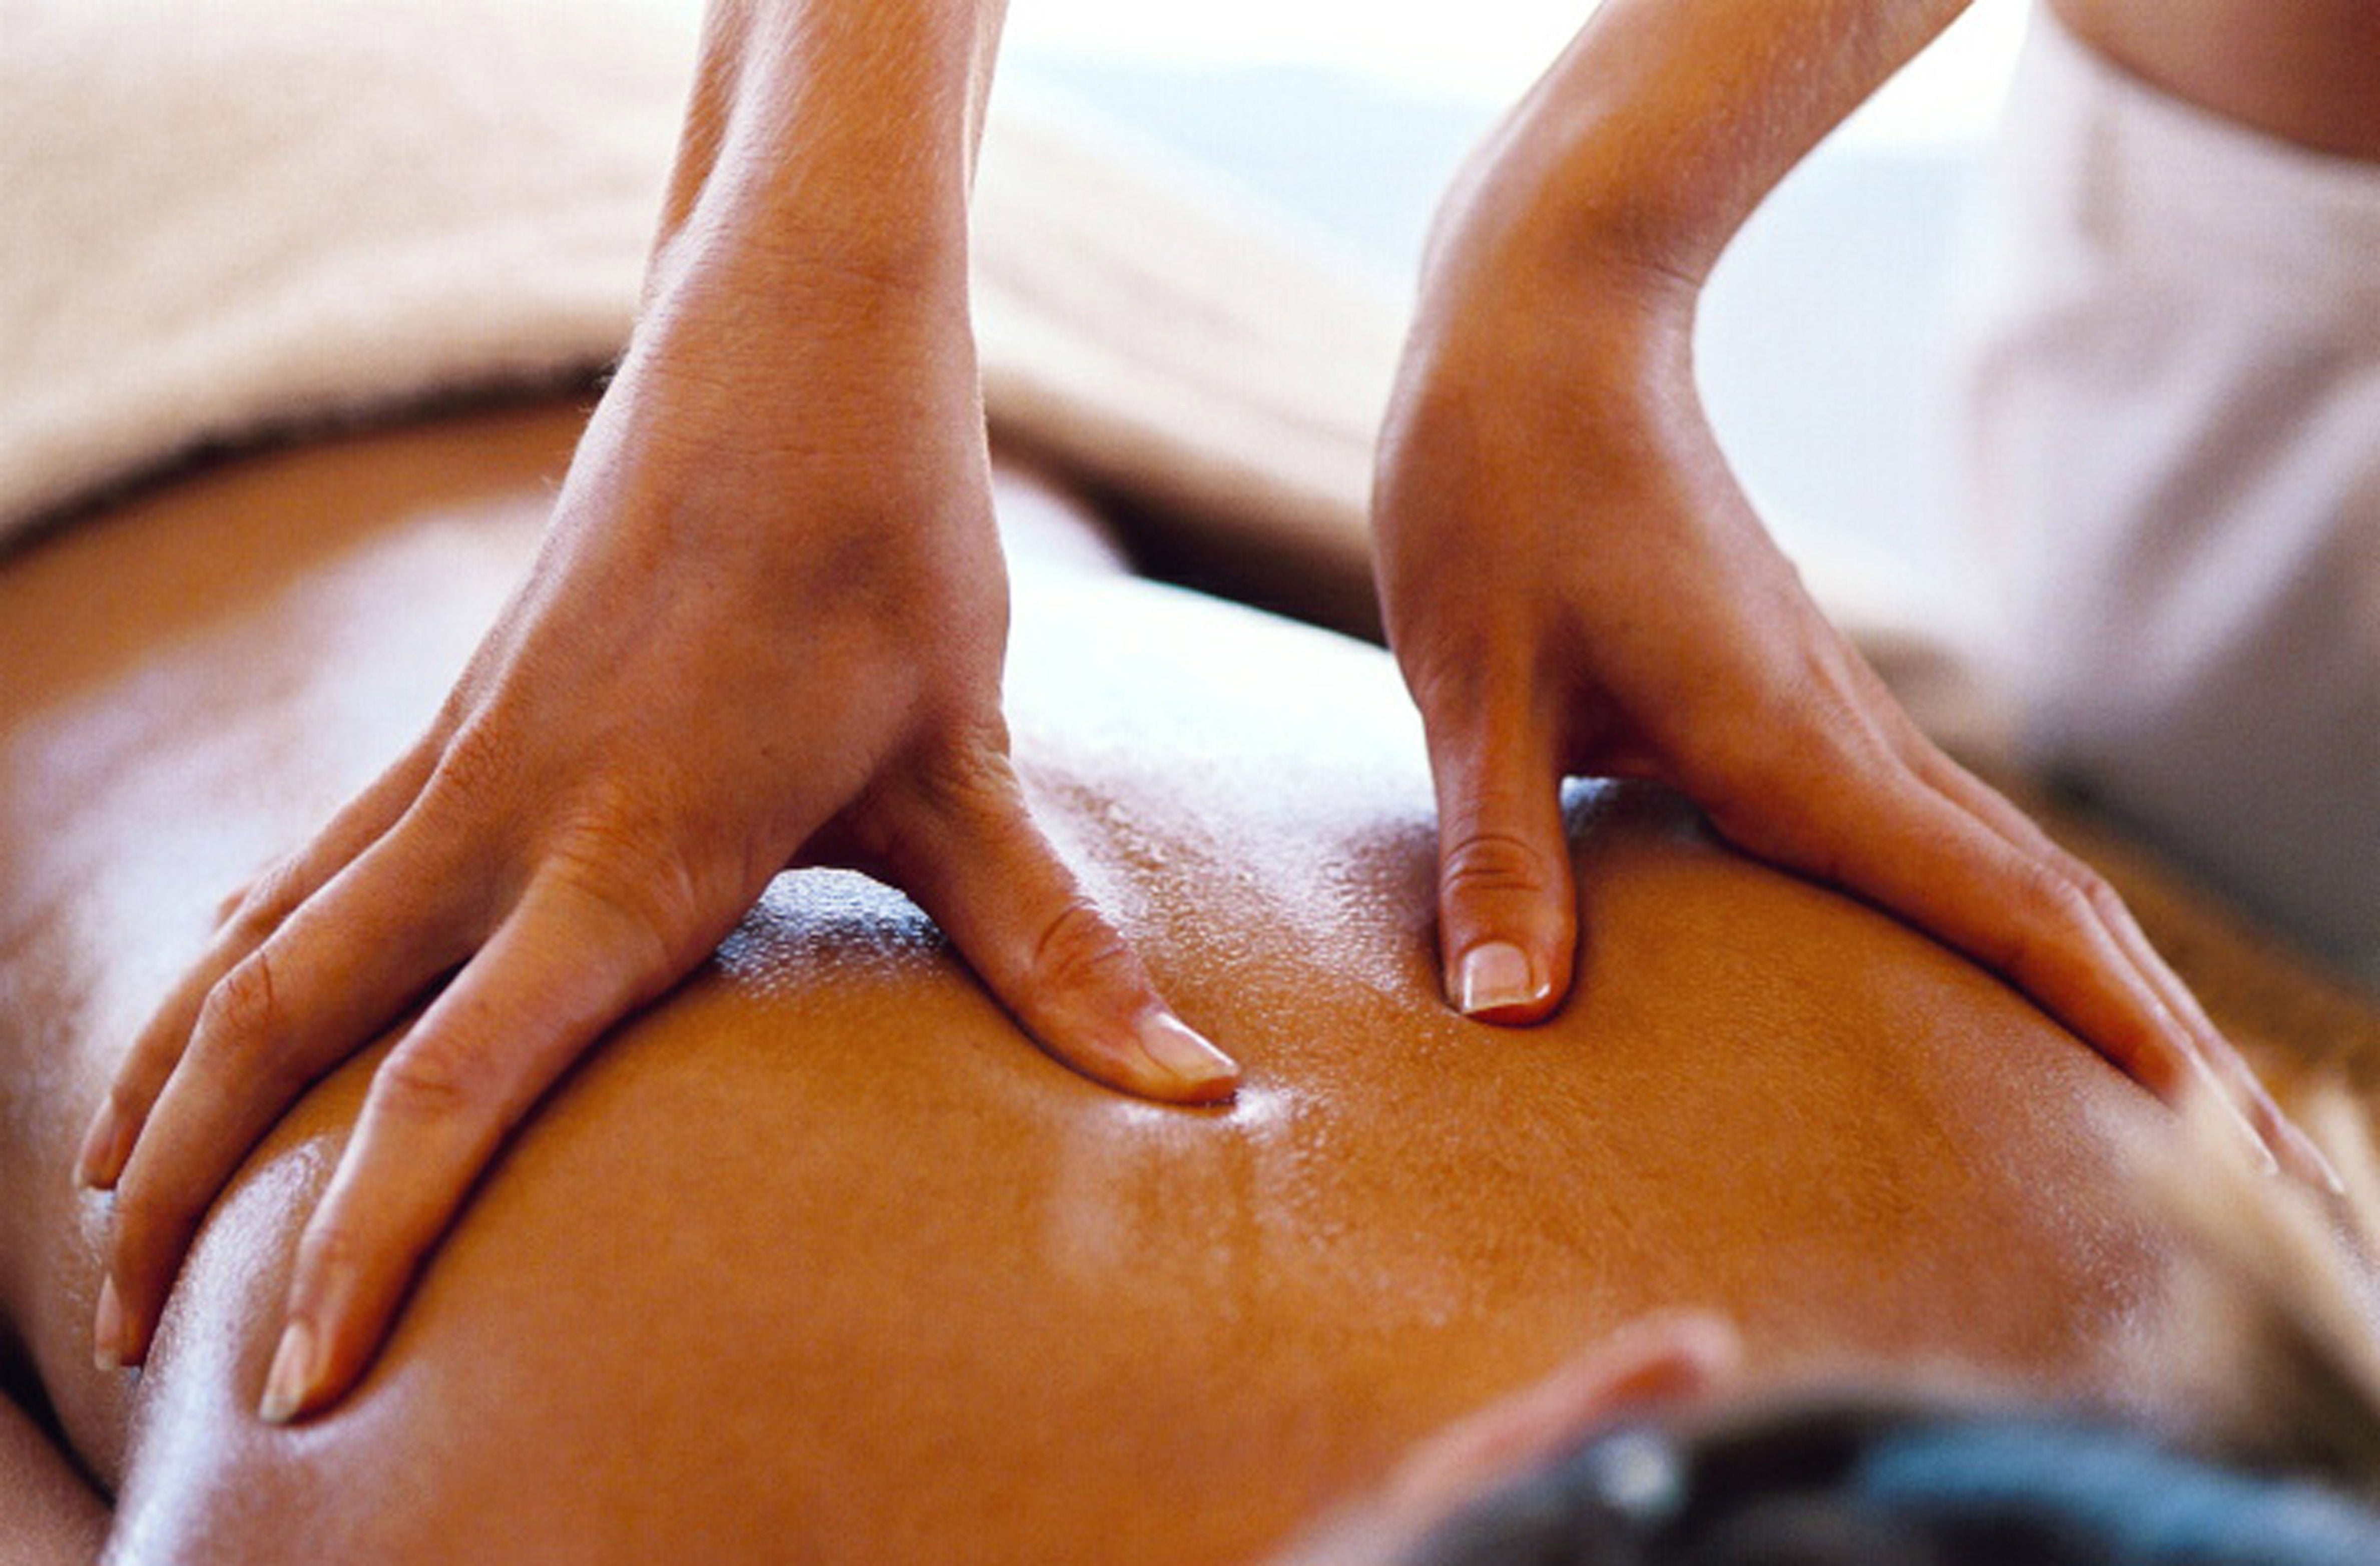 Sensual massage using coconut oil